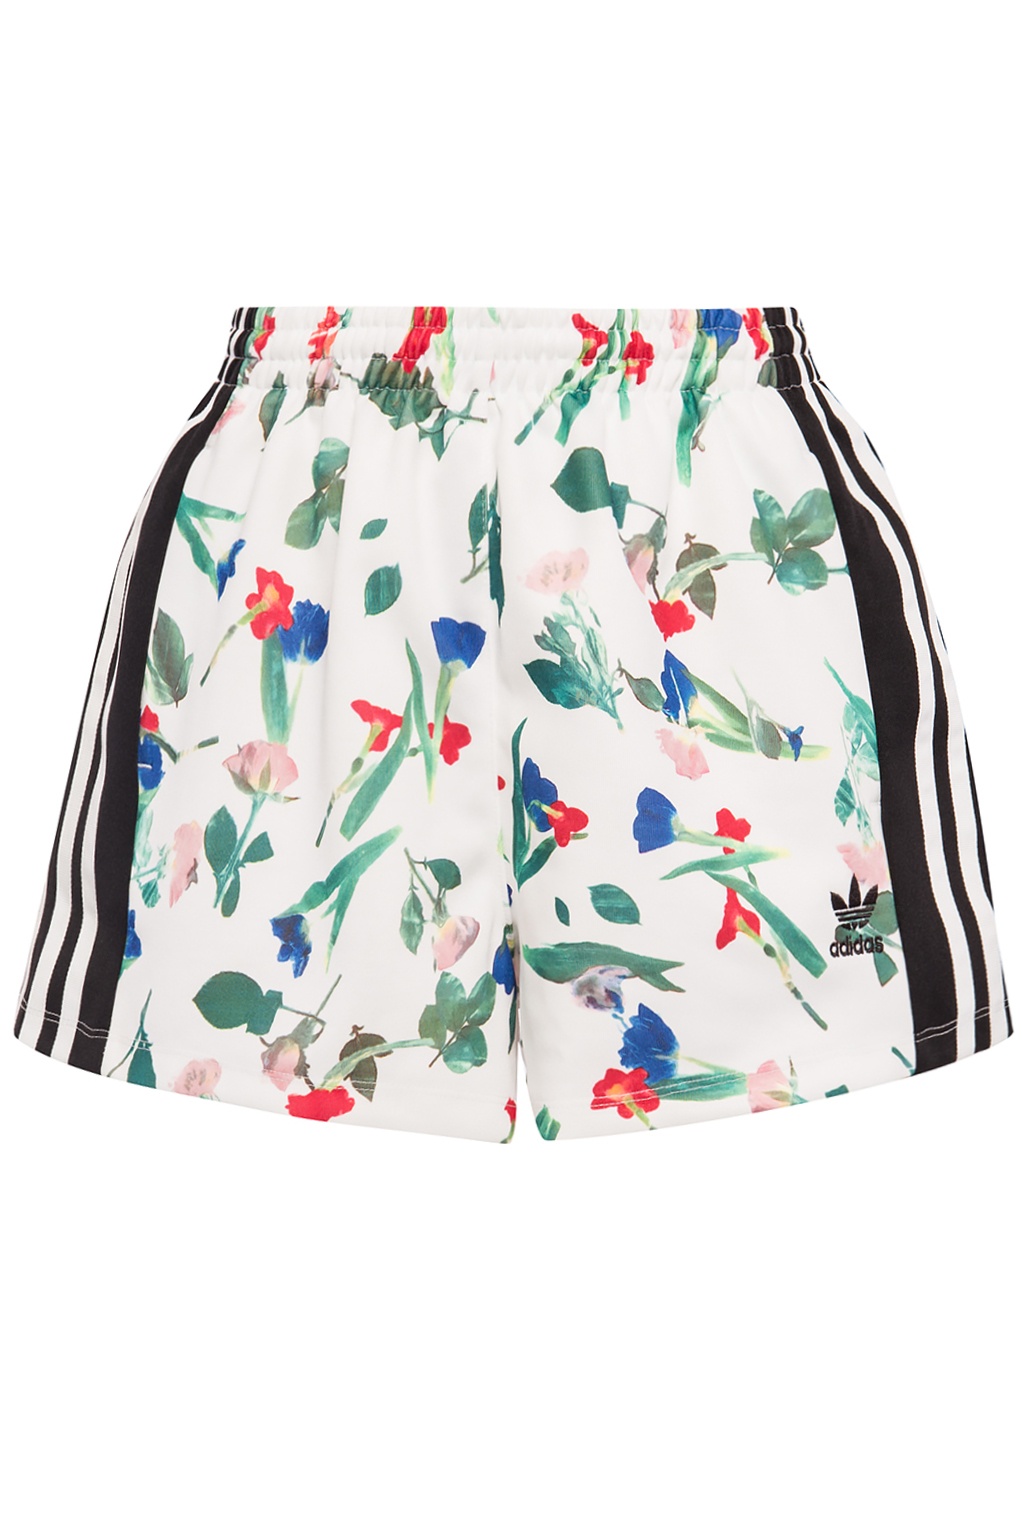 adidas floral shorts